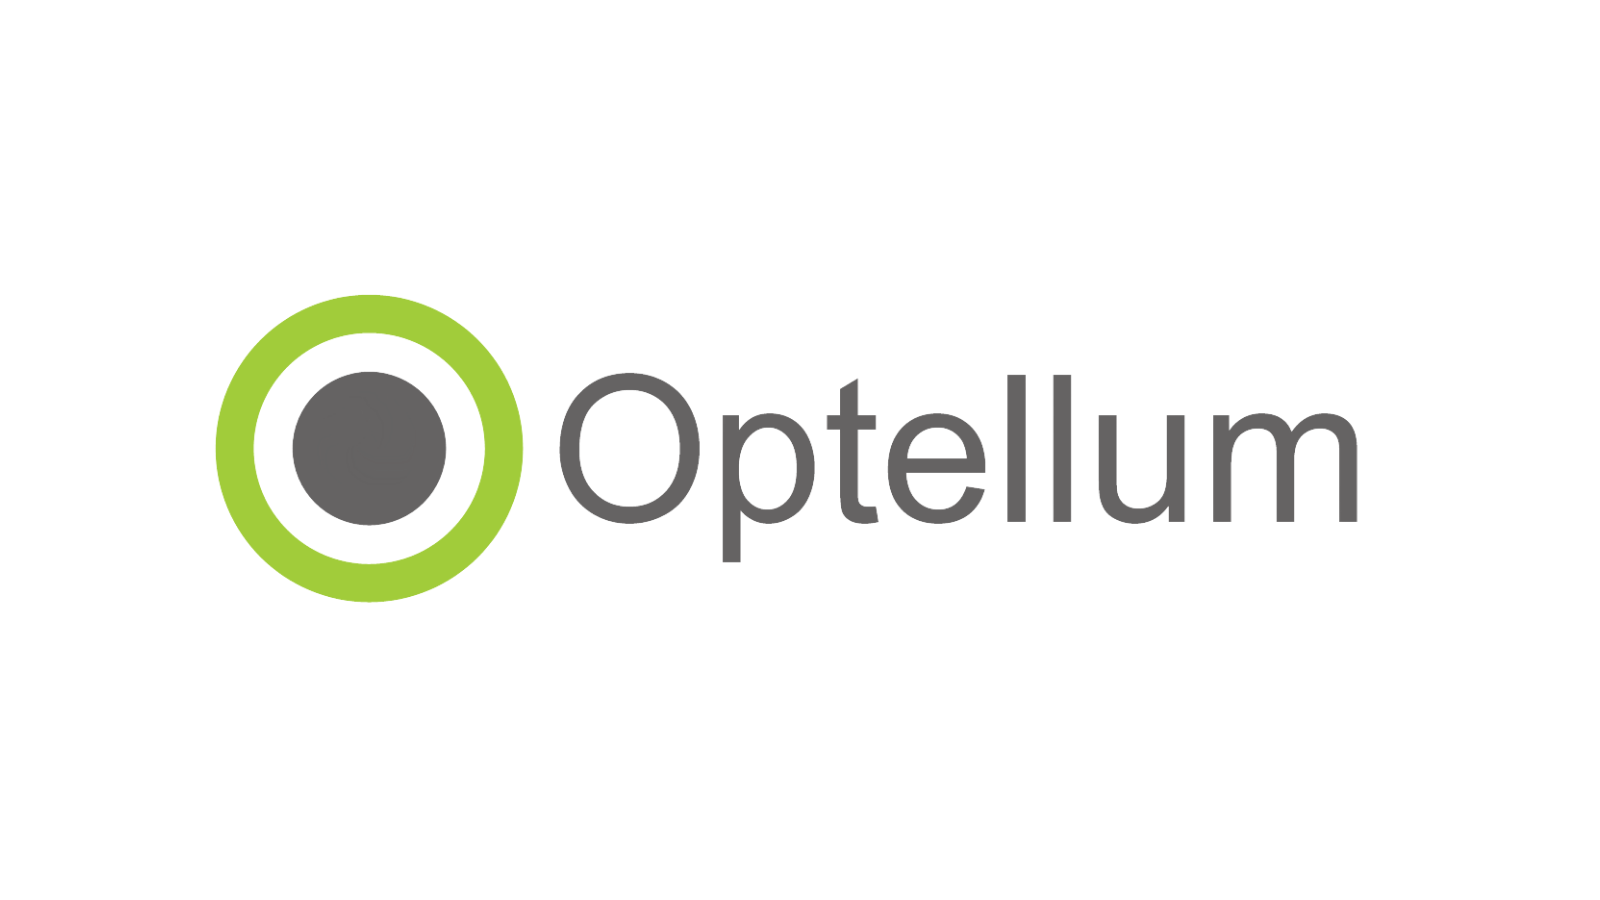 Optellum logo.